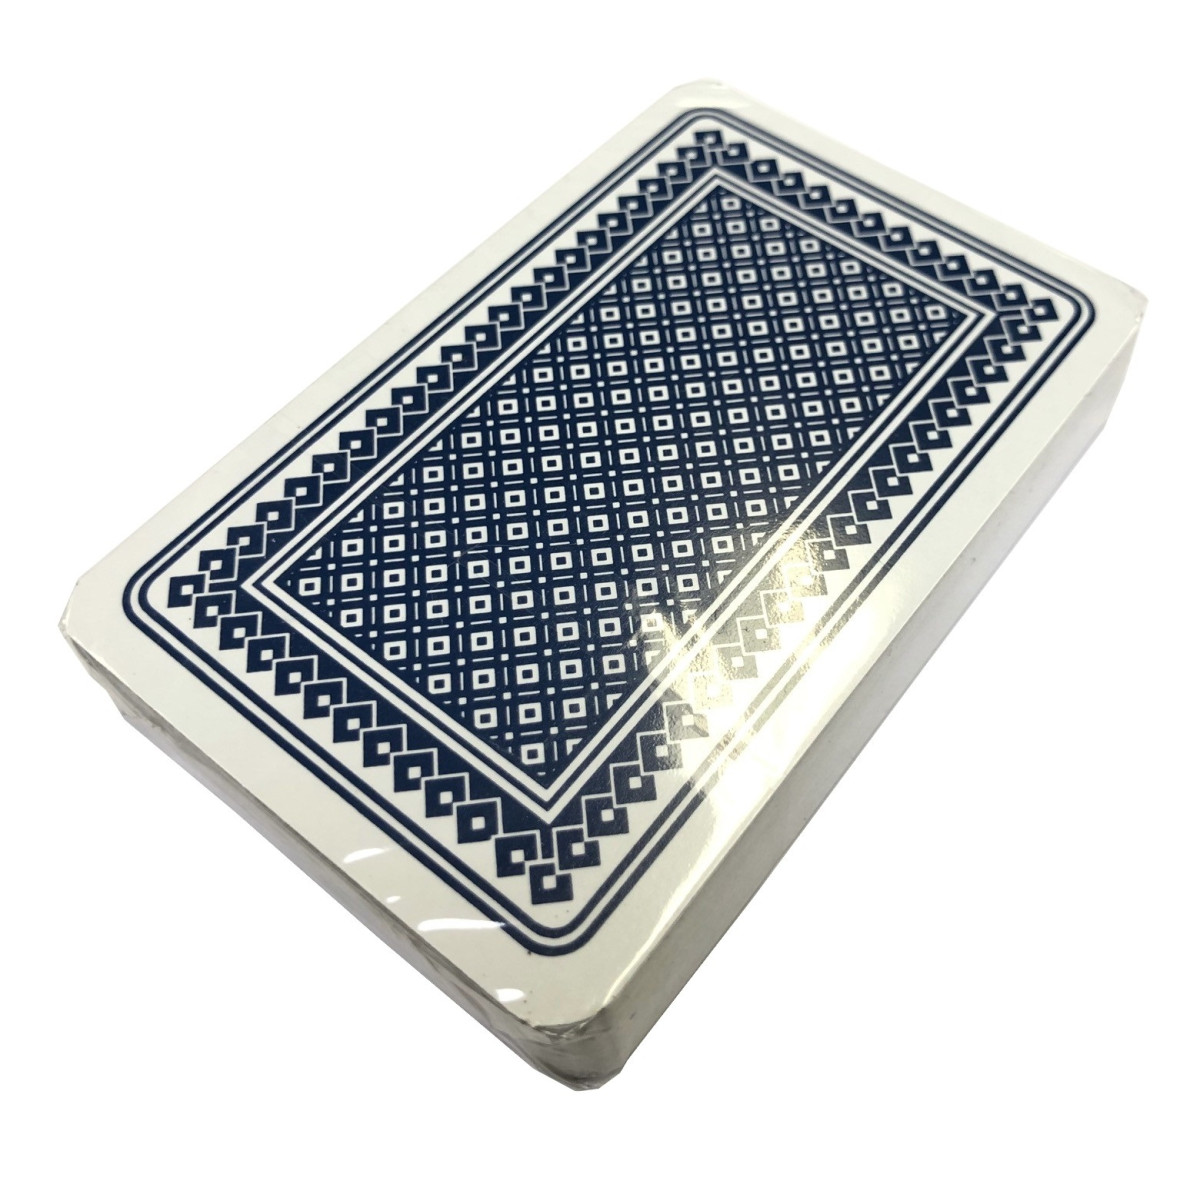 landen Maand Eigenlijk Kaartspel Carlton 52 kaarten - frans - blauw kopen op Amusement.be